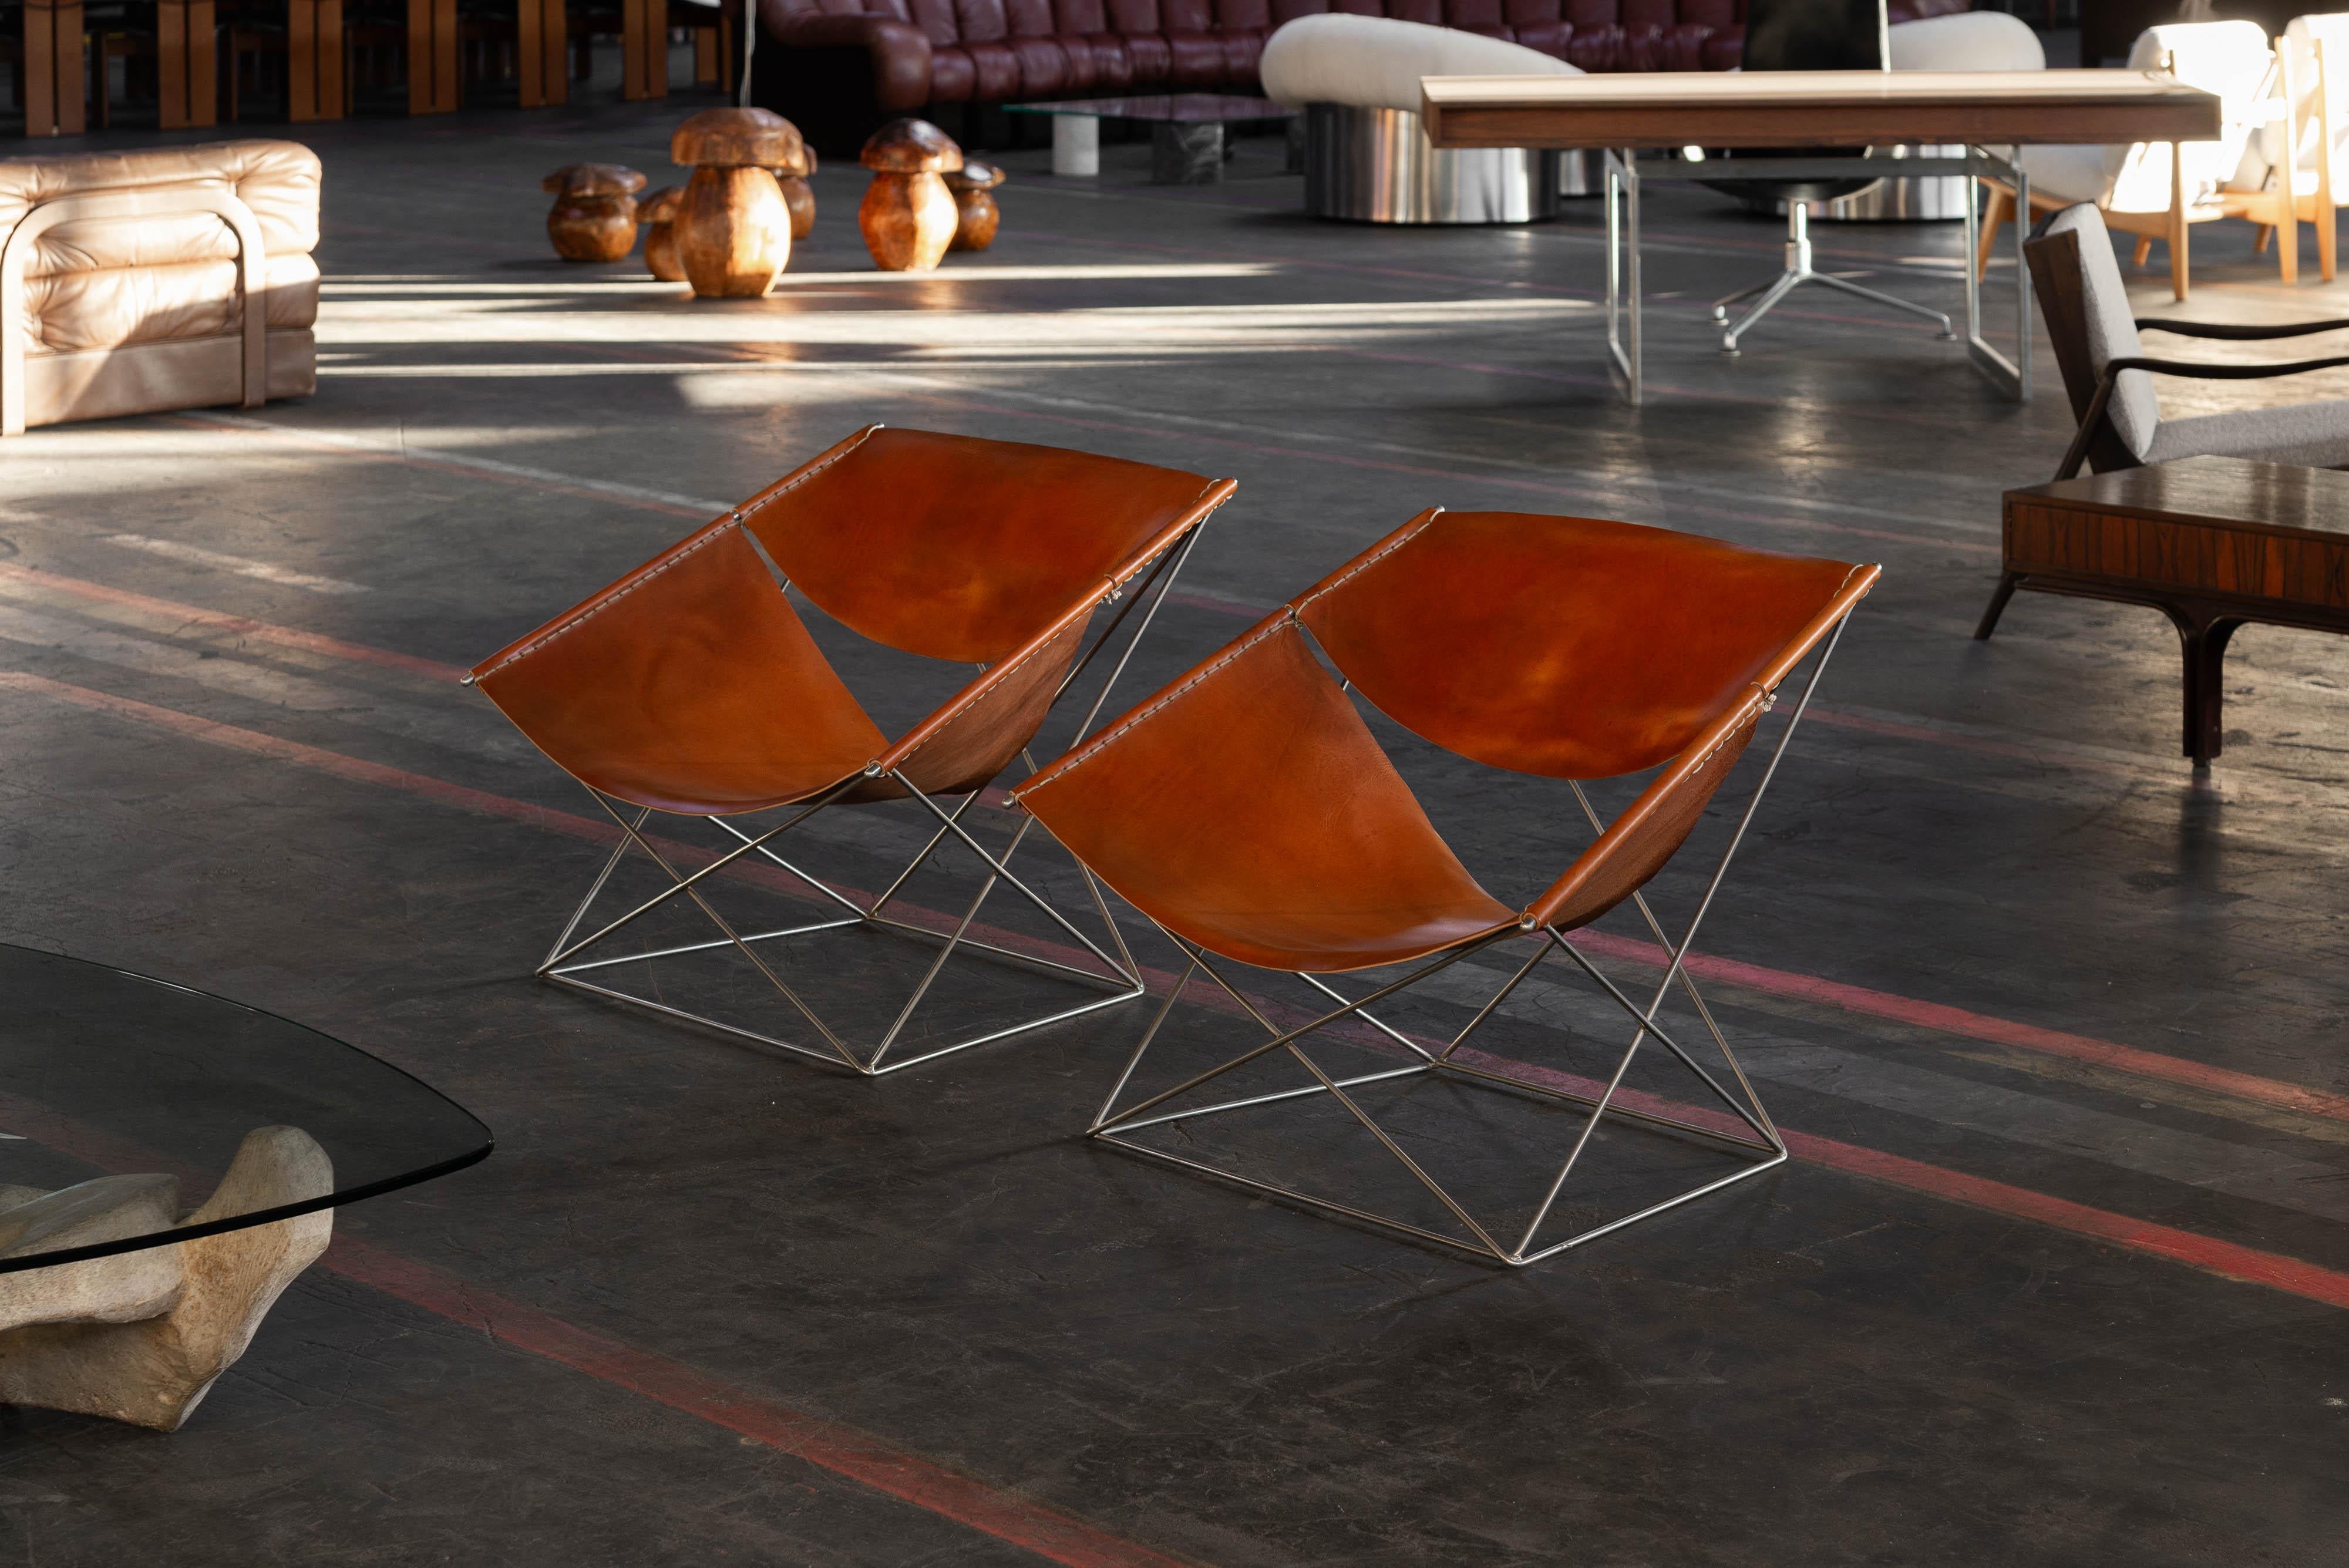 Auffallendes Paar Stühle Modell F675, entworfen von Pierre Paulin und hergestellt von Artifort, Niederlande 1963. Diese Stühle haben vernickelte, geometrische Gestelle, die visuell beeindruckend sind! Das minimalistische Gestell und die